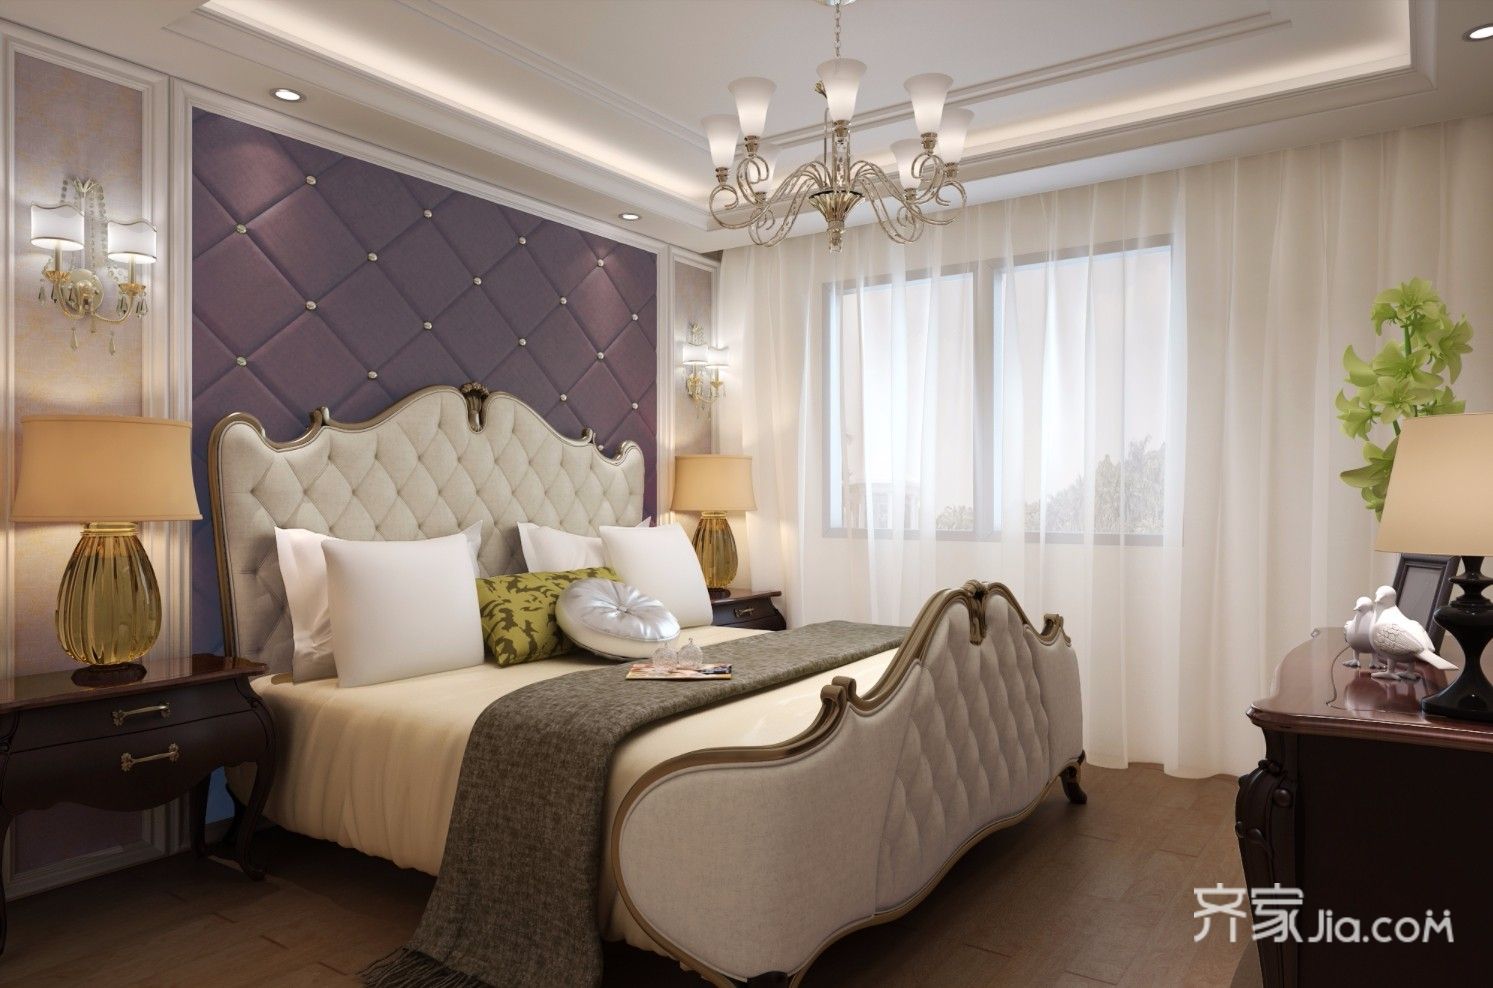 20万以上装修,四房装修,140平米以上装修,卧室,卧室背景墙,紫色,简欧风格